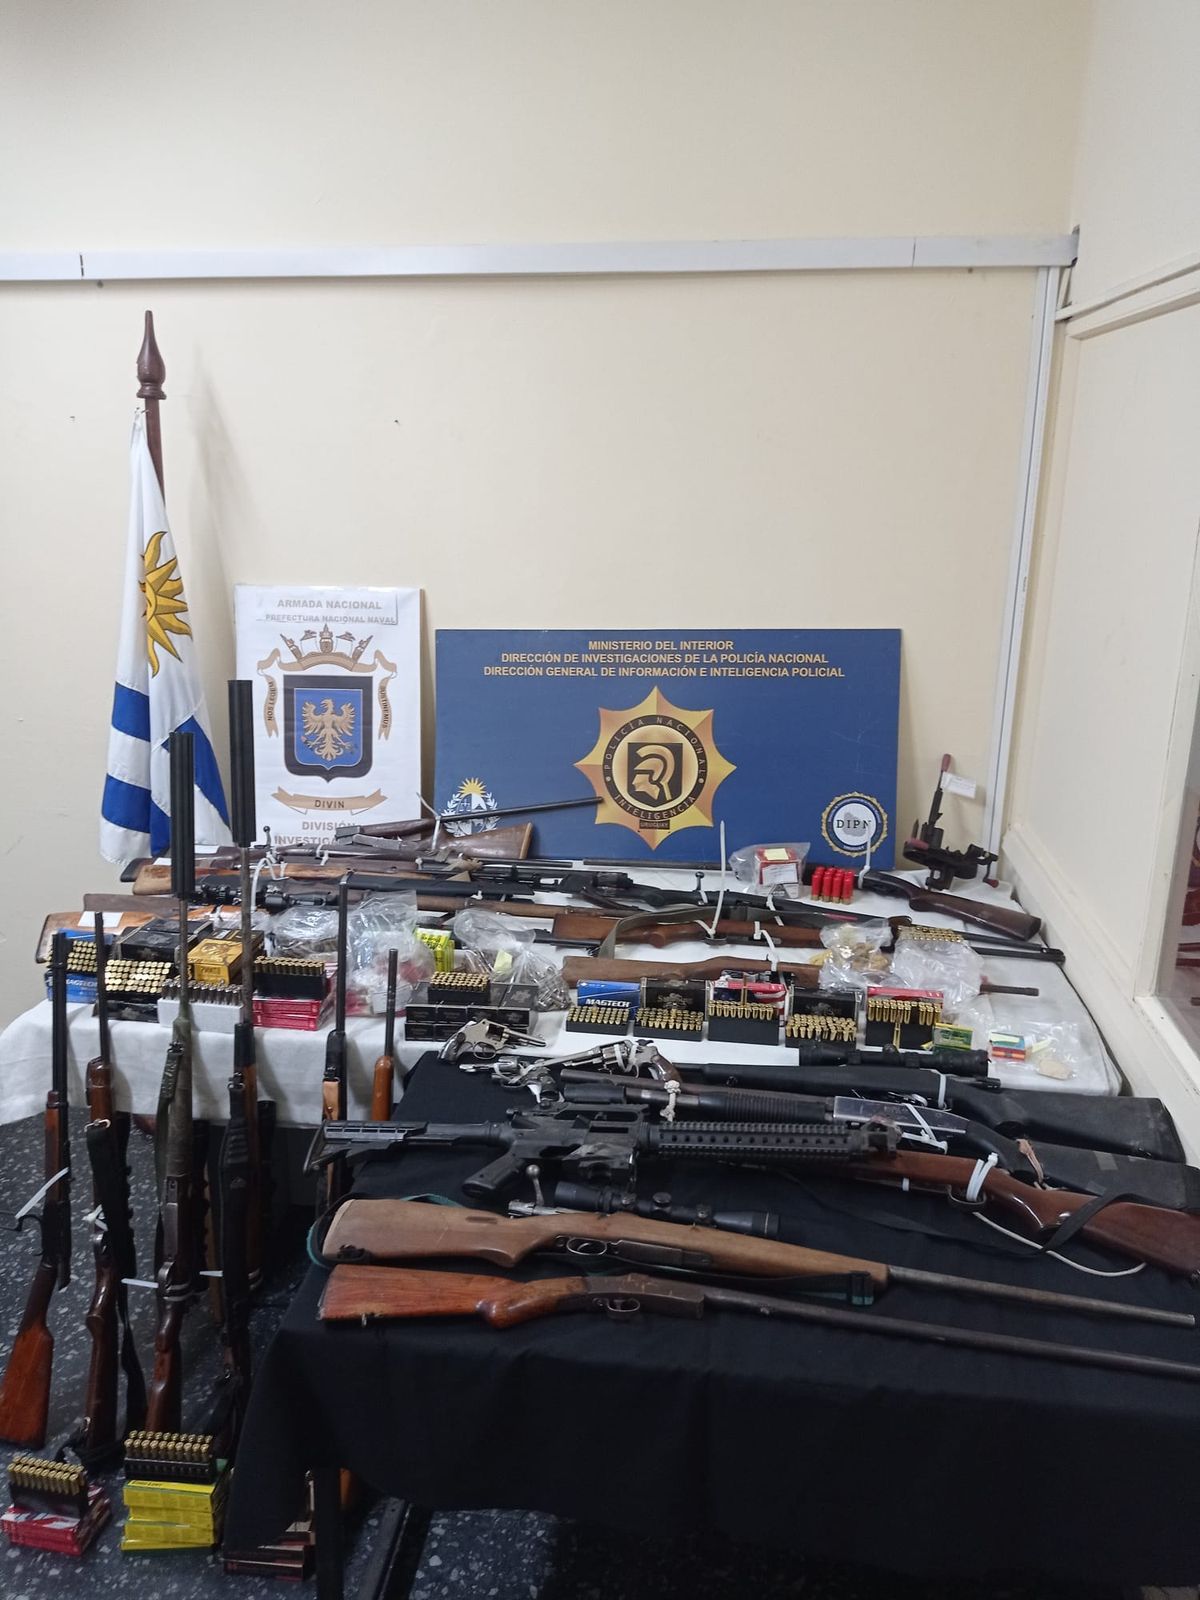 Traían armas y municiones desde Argentina por el Río Uruguay